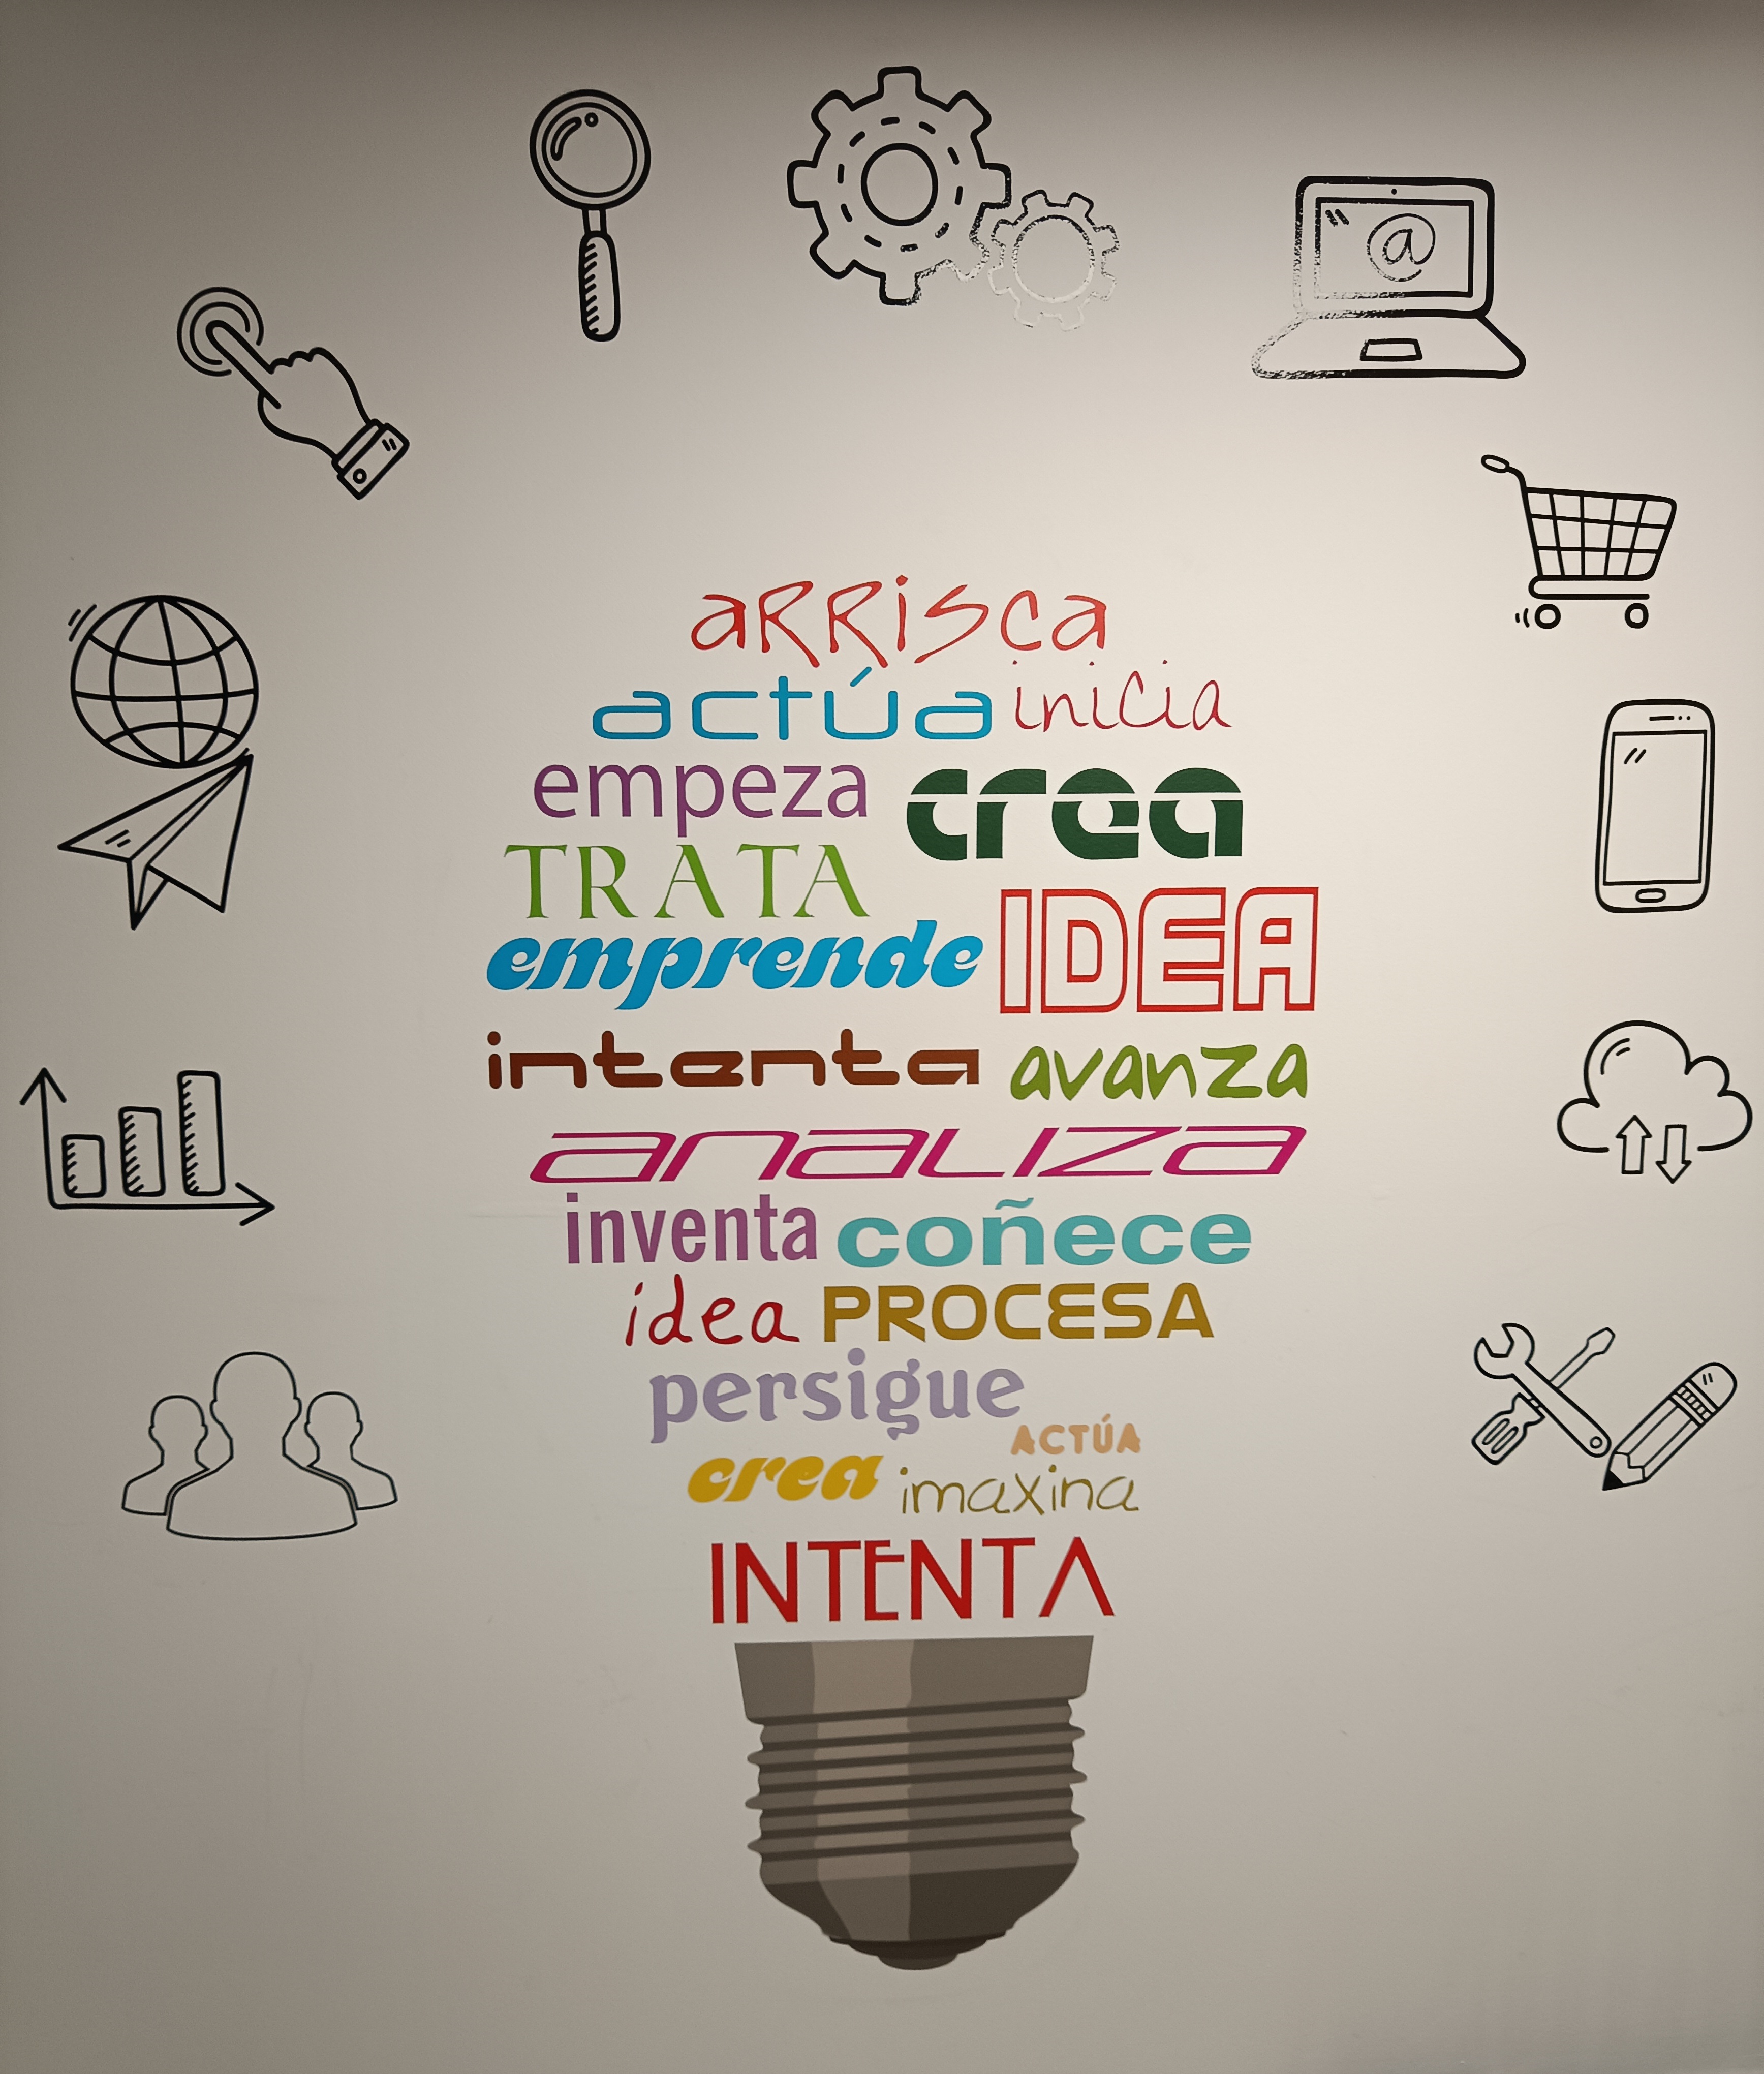 Logo Innovación.jpg.1